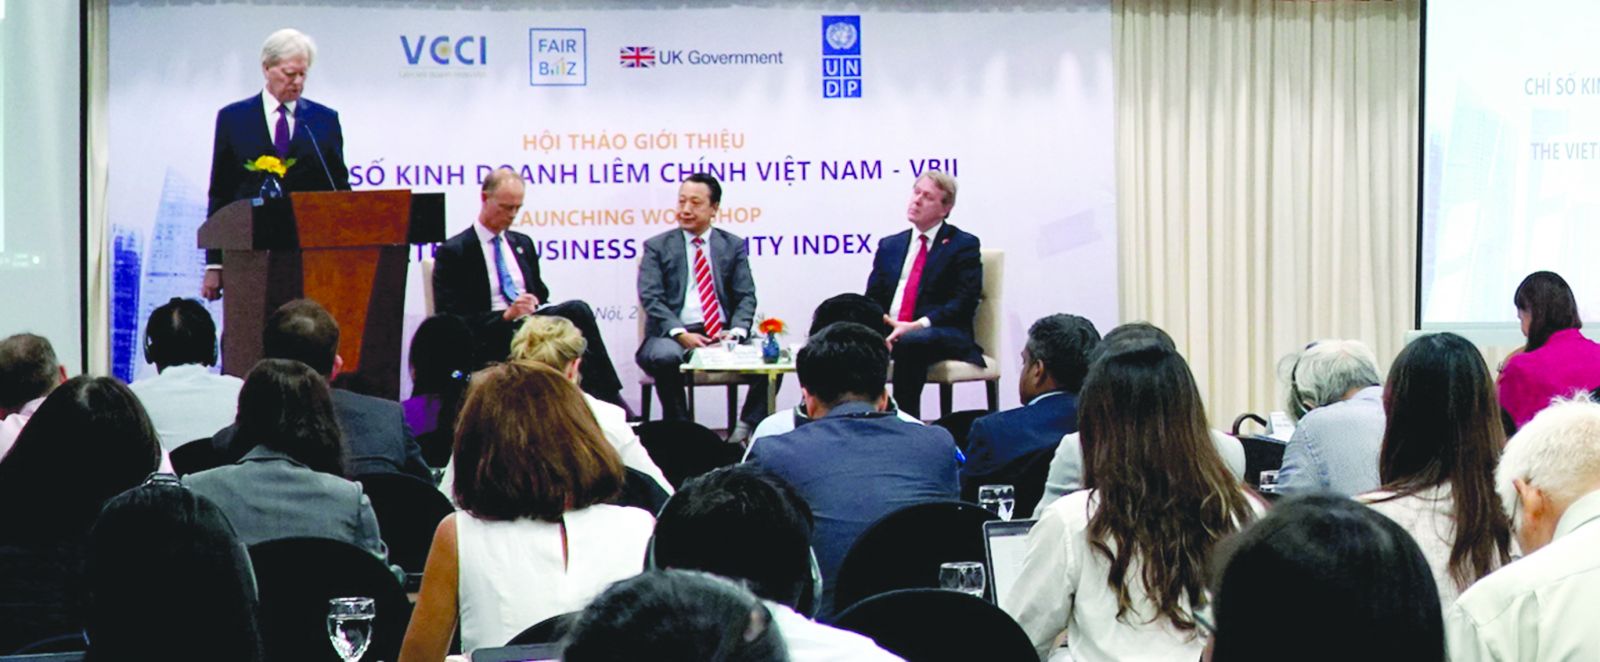  Chỉ số kinh doanh liêm chính Việt Nam (VBII) lần đầu tiên được giới thiệu bởi Liên đoàn Thương mại và Công nghiệp Việt Nam (VCCI) và Chương trình phát triển Liên Hợp Quốc tại Việt Nam (UNDP)